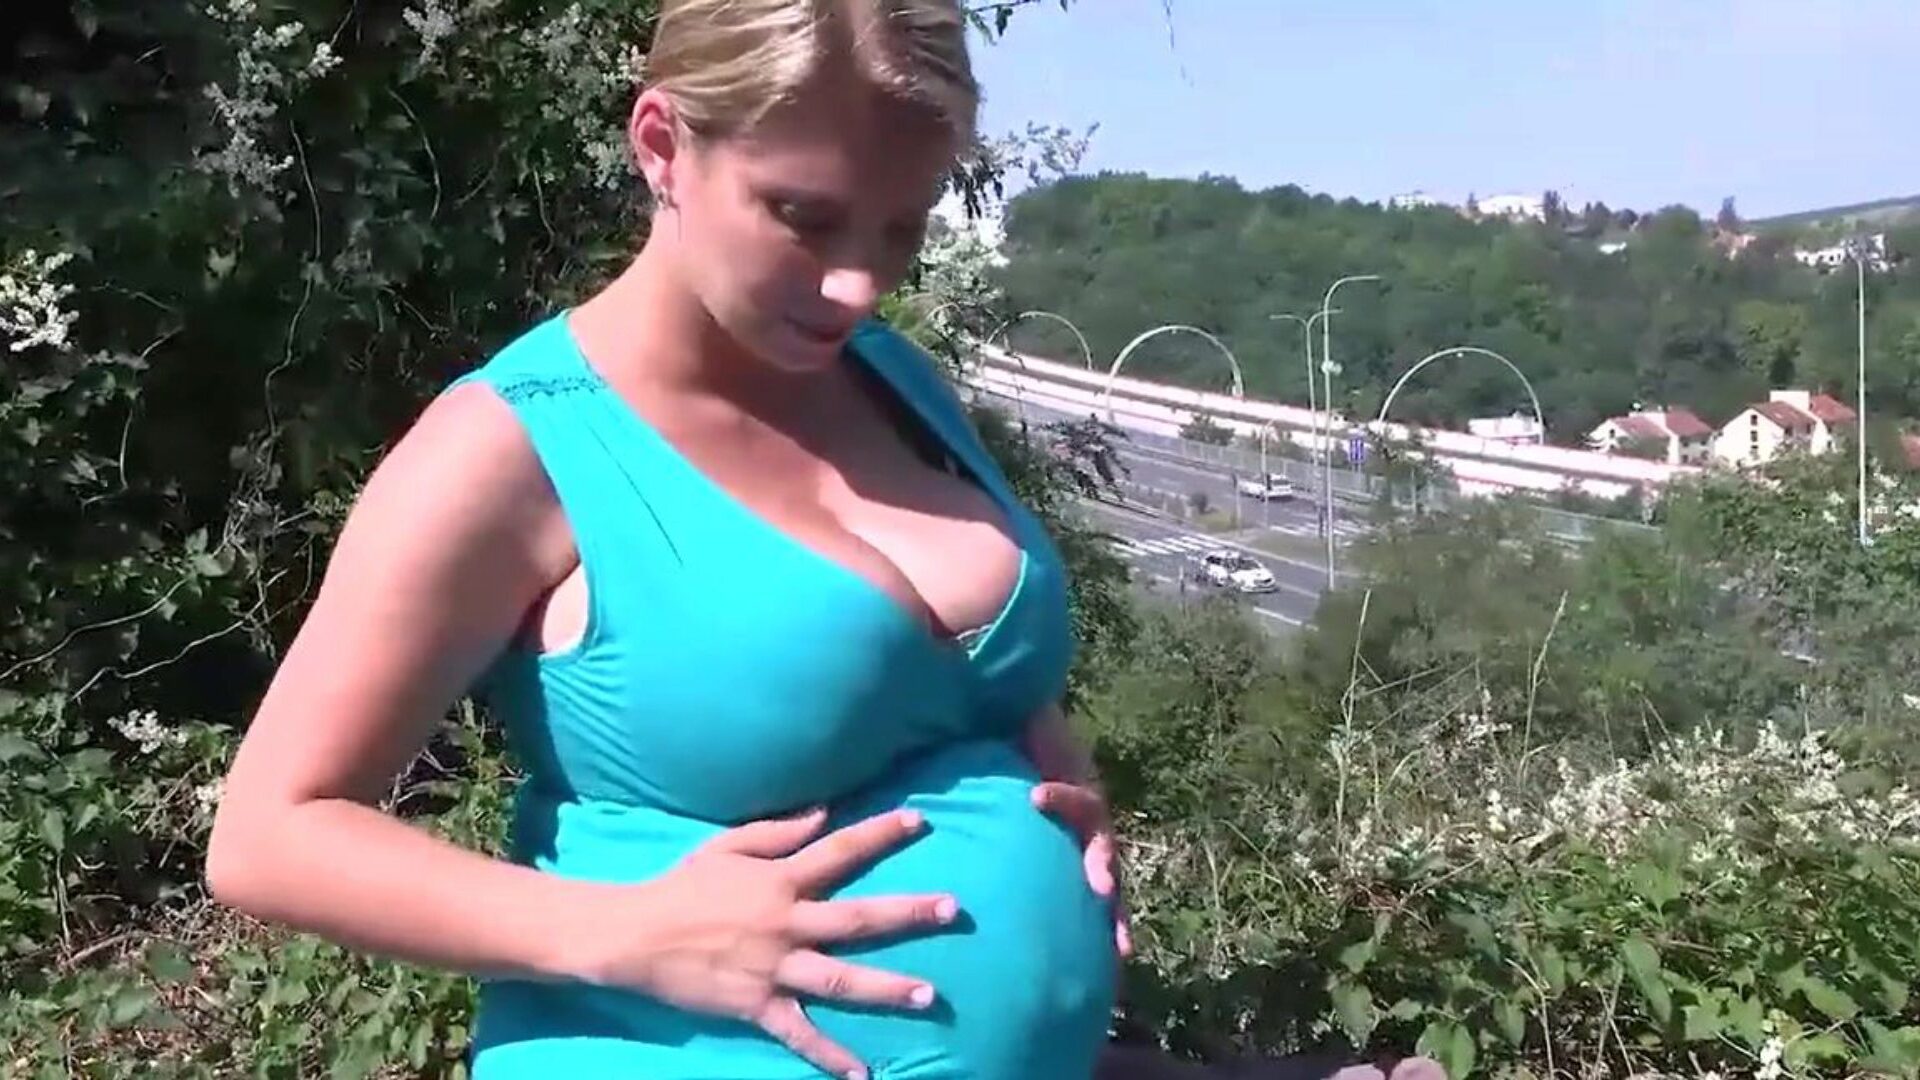 katerina hartlova sale para disfrutar un poco con su figura embarazada